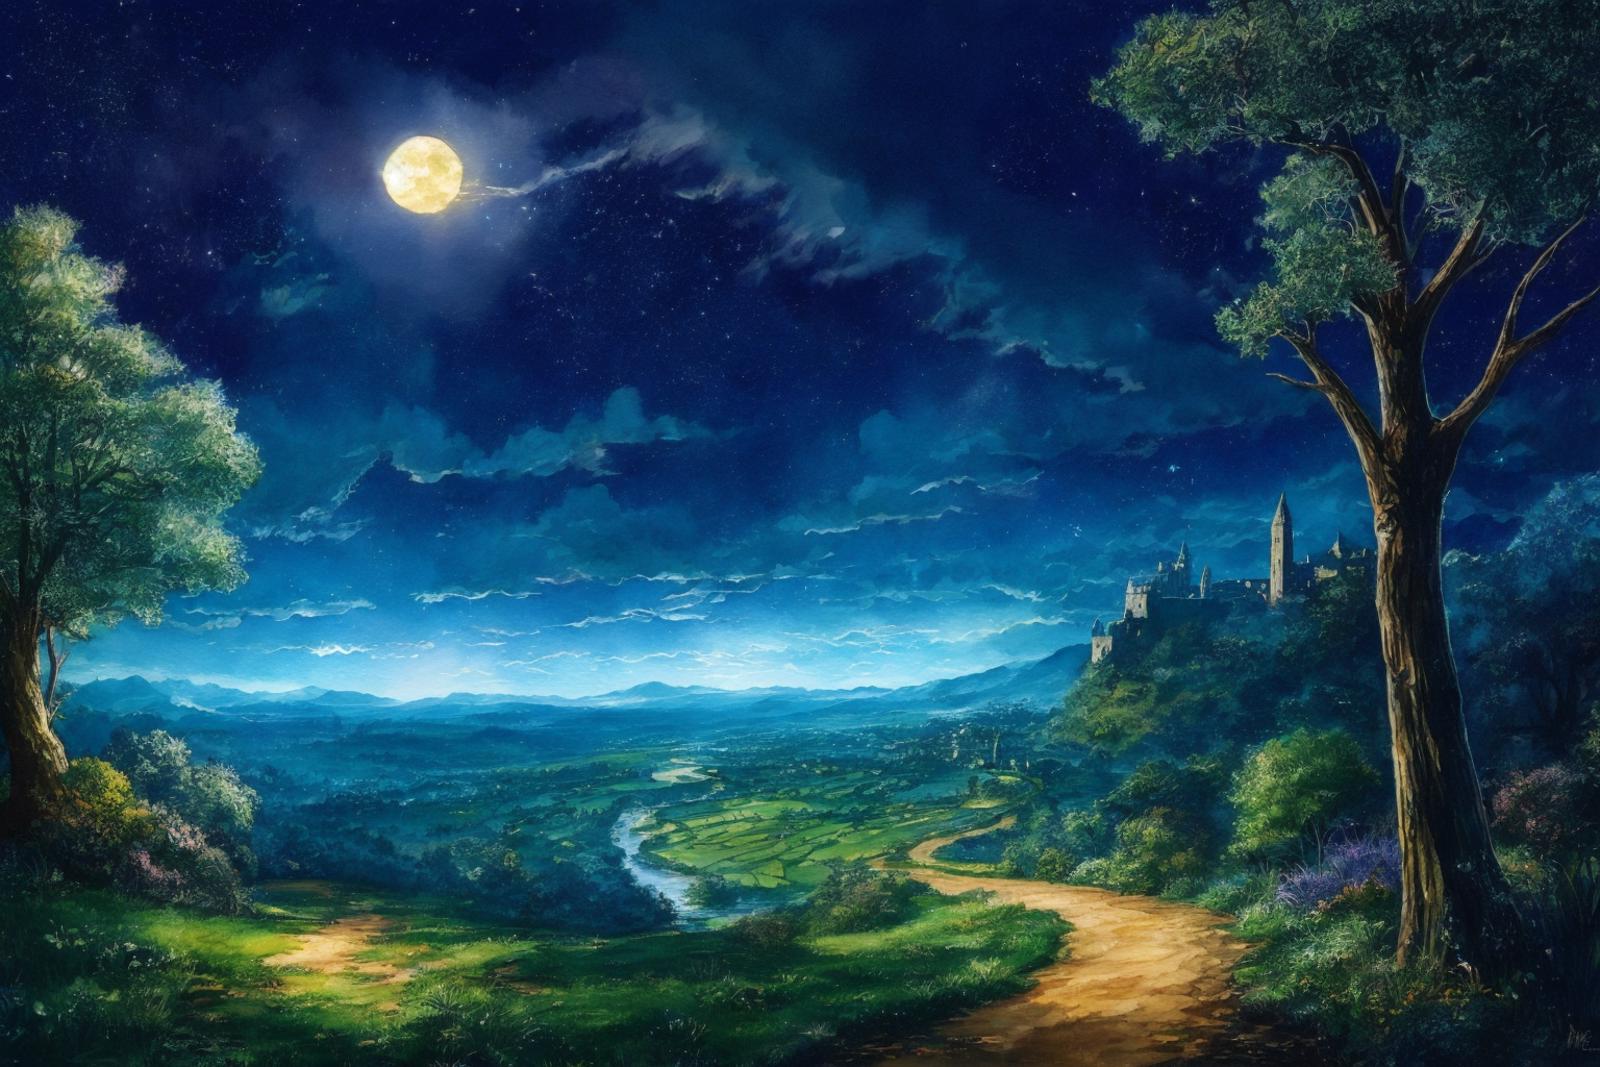 Fantasy Landscape image by Foredev